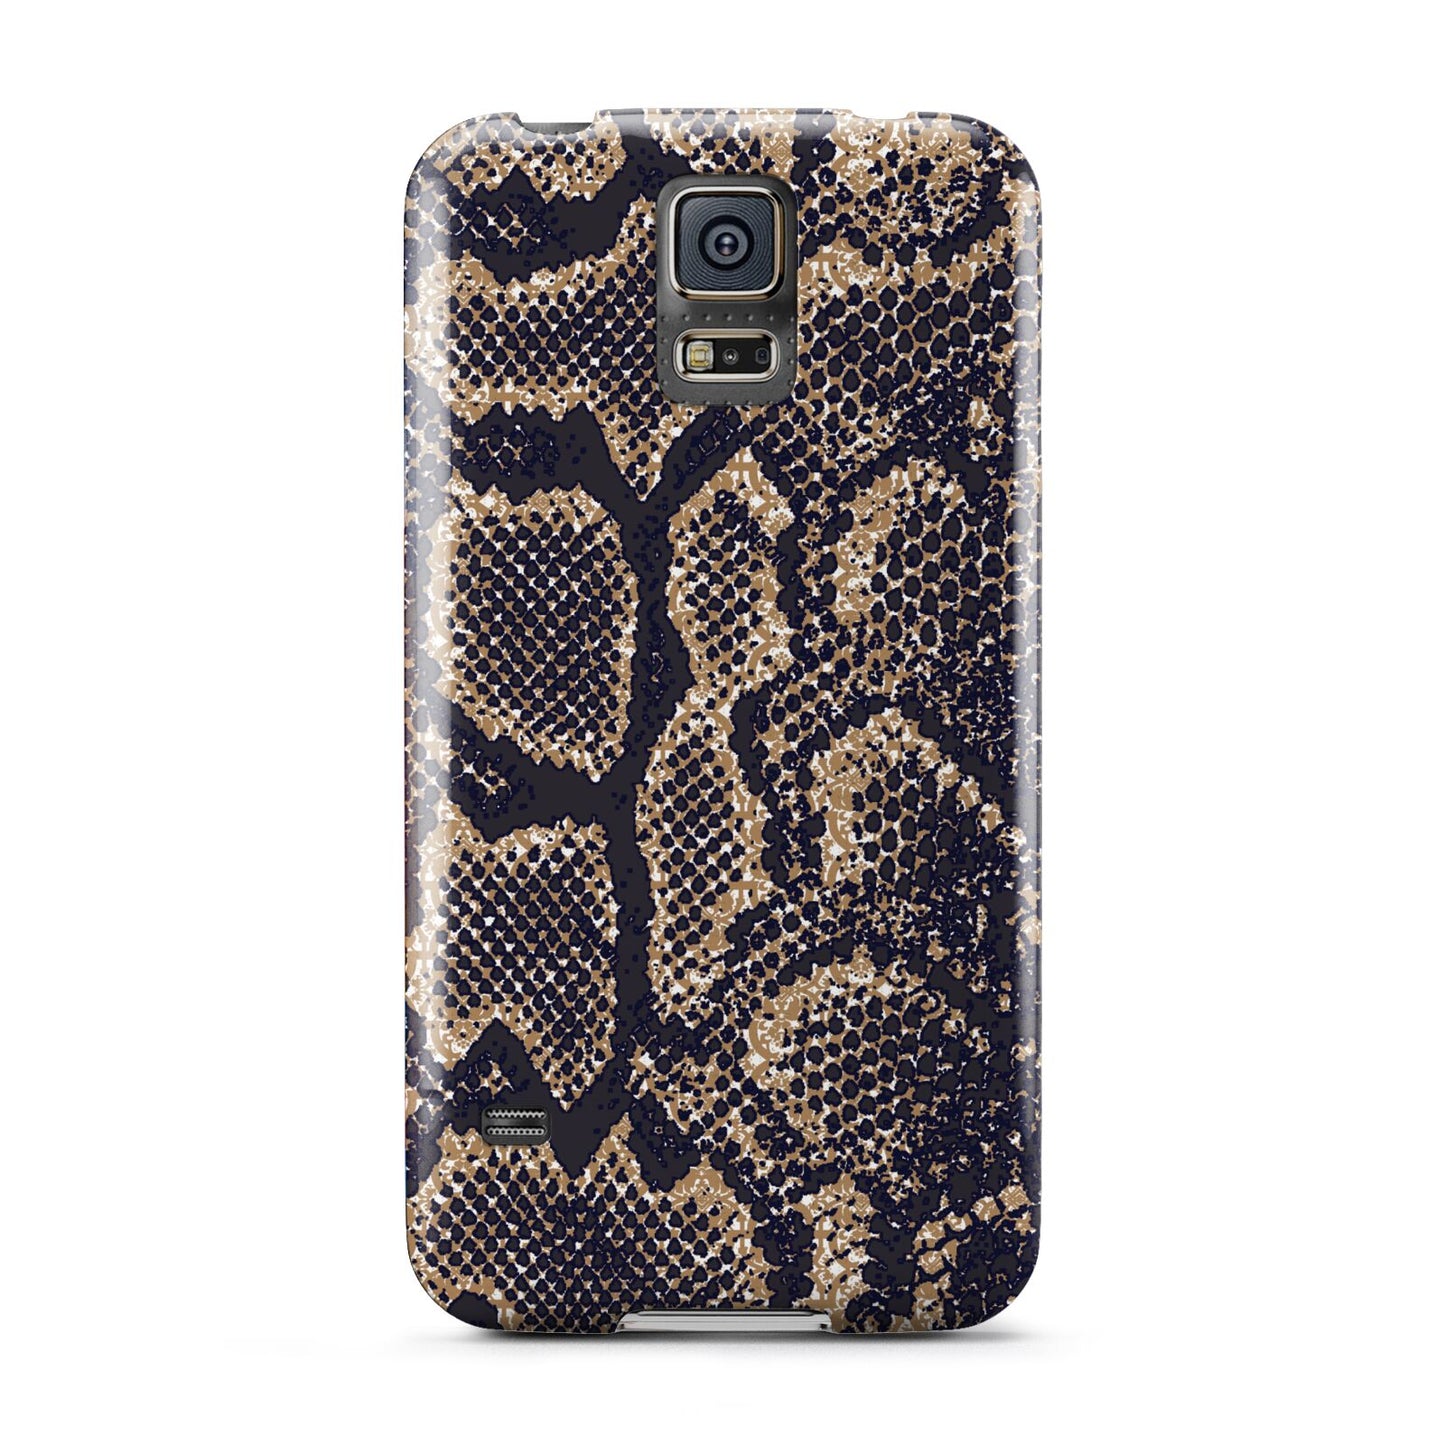 Brown Snakeskin Samsung Galaxy S5 Case